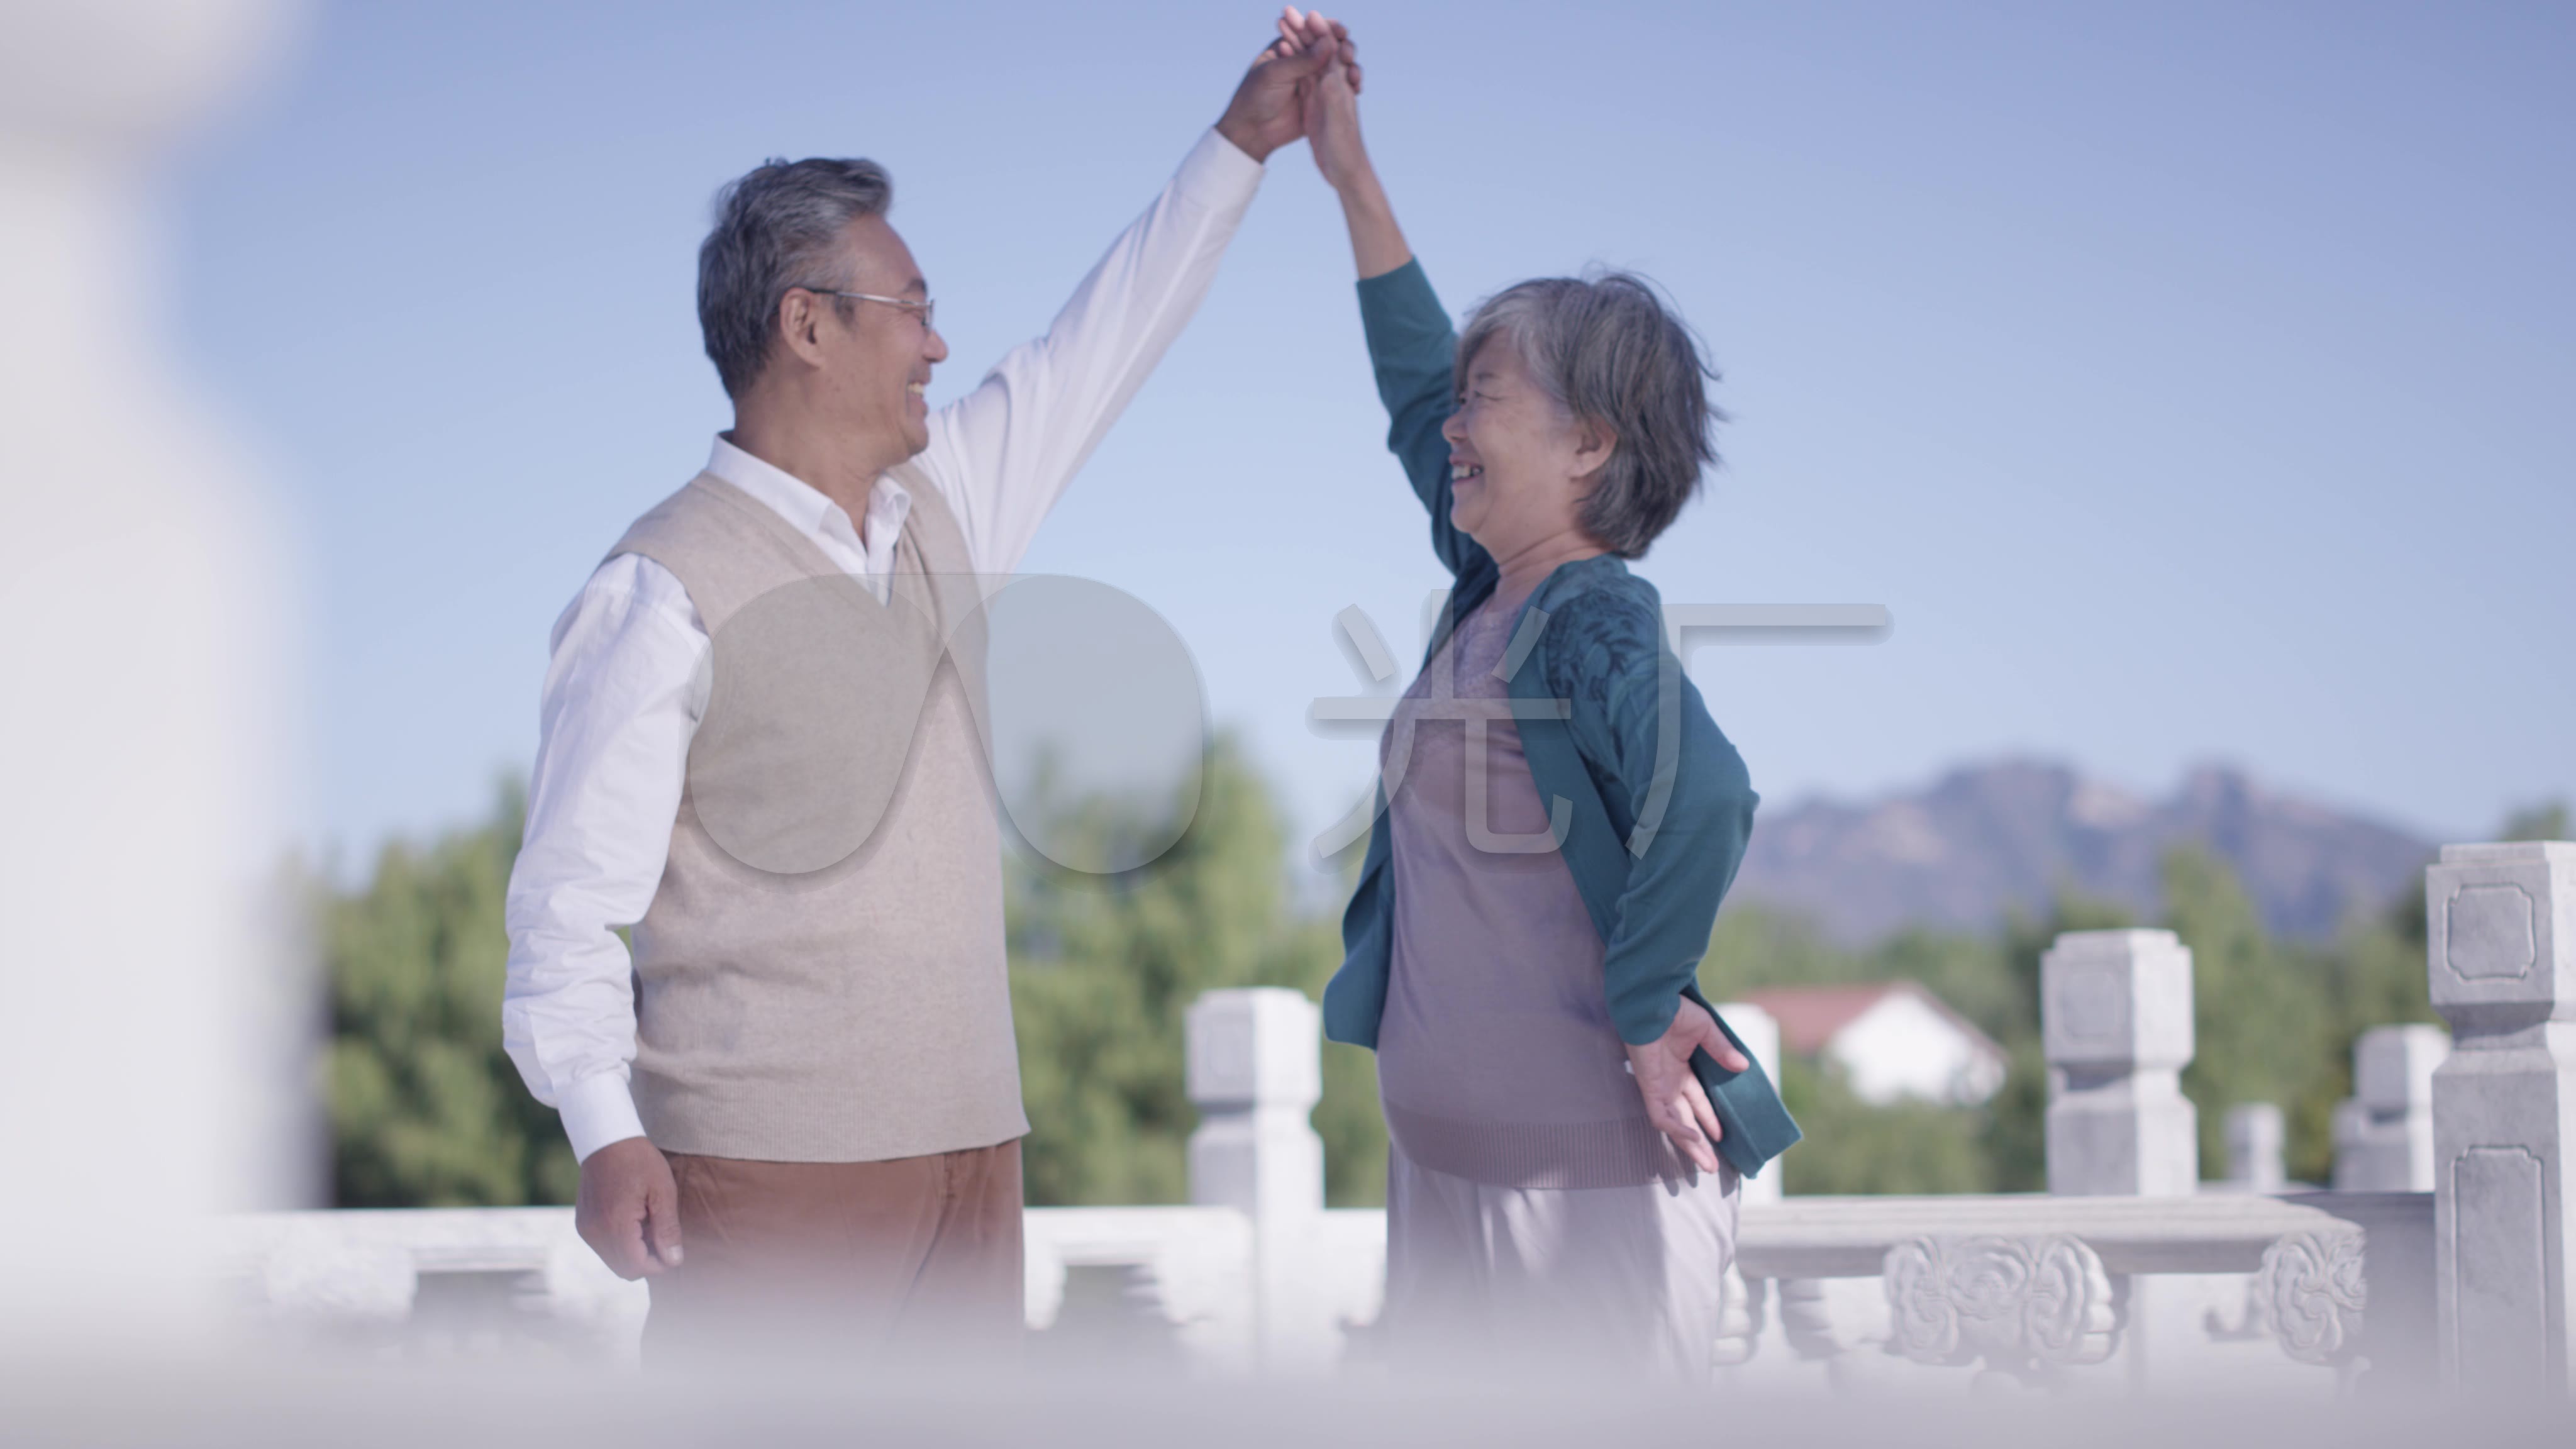 开心的老年夫妇在公园跑步-蓝牛仔影像-中国原创广告影像素材